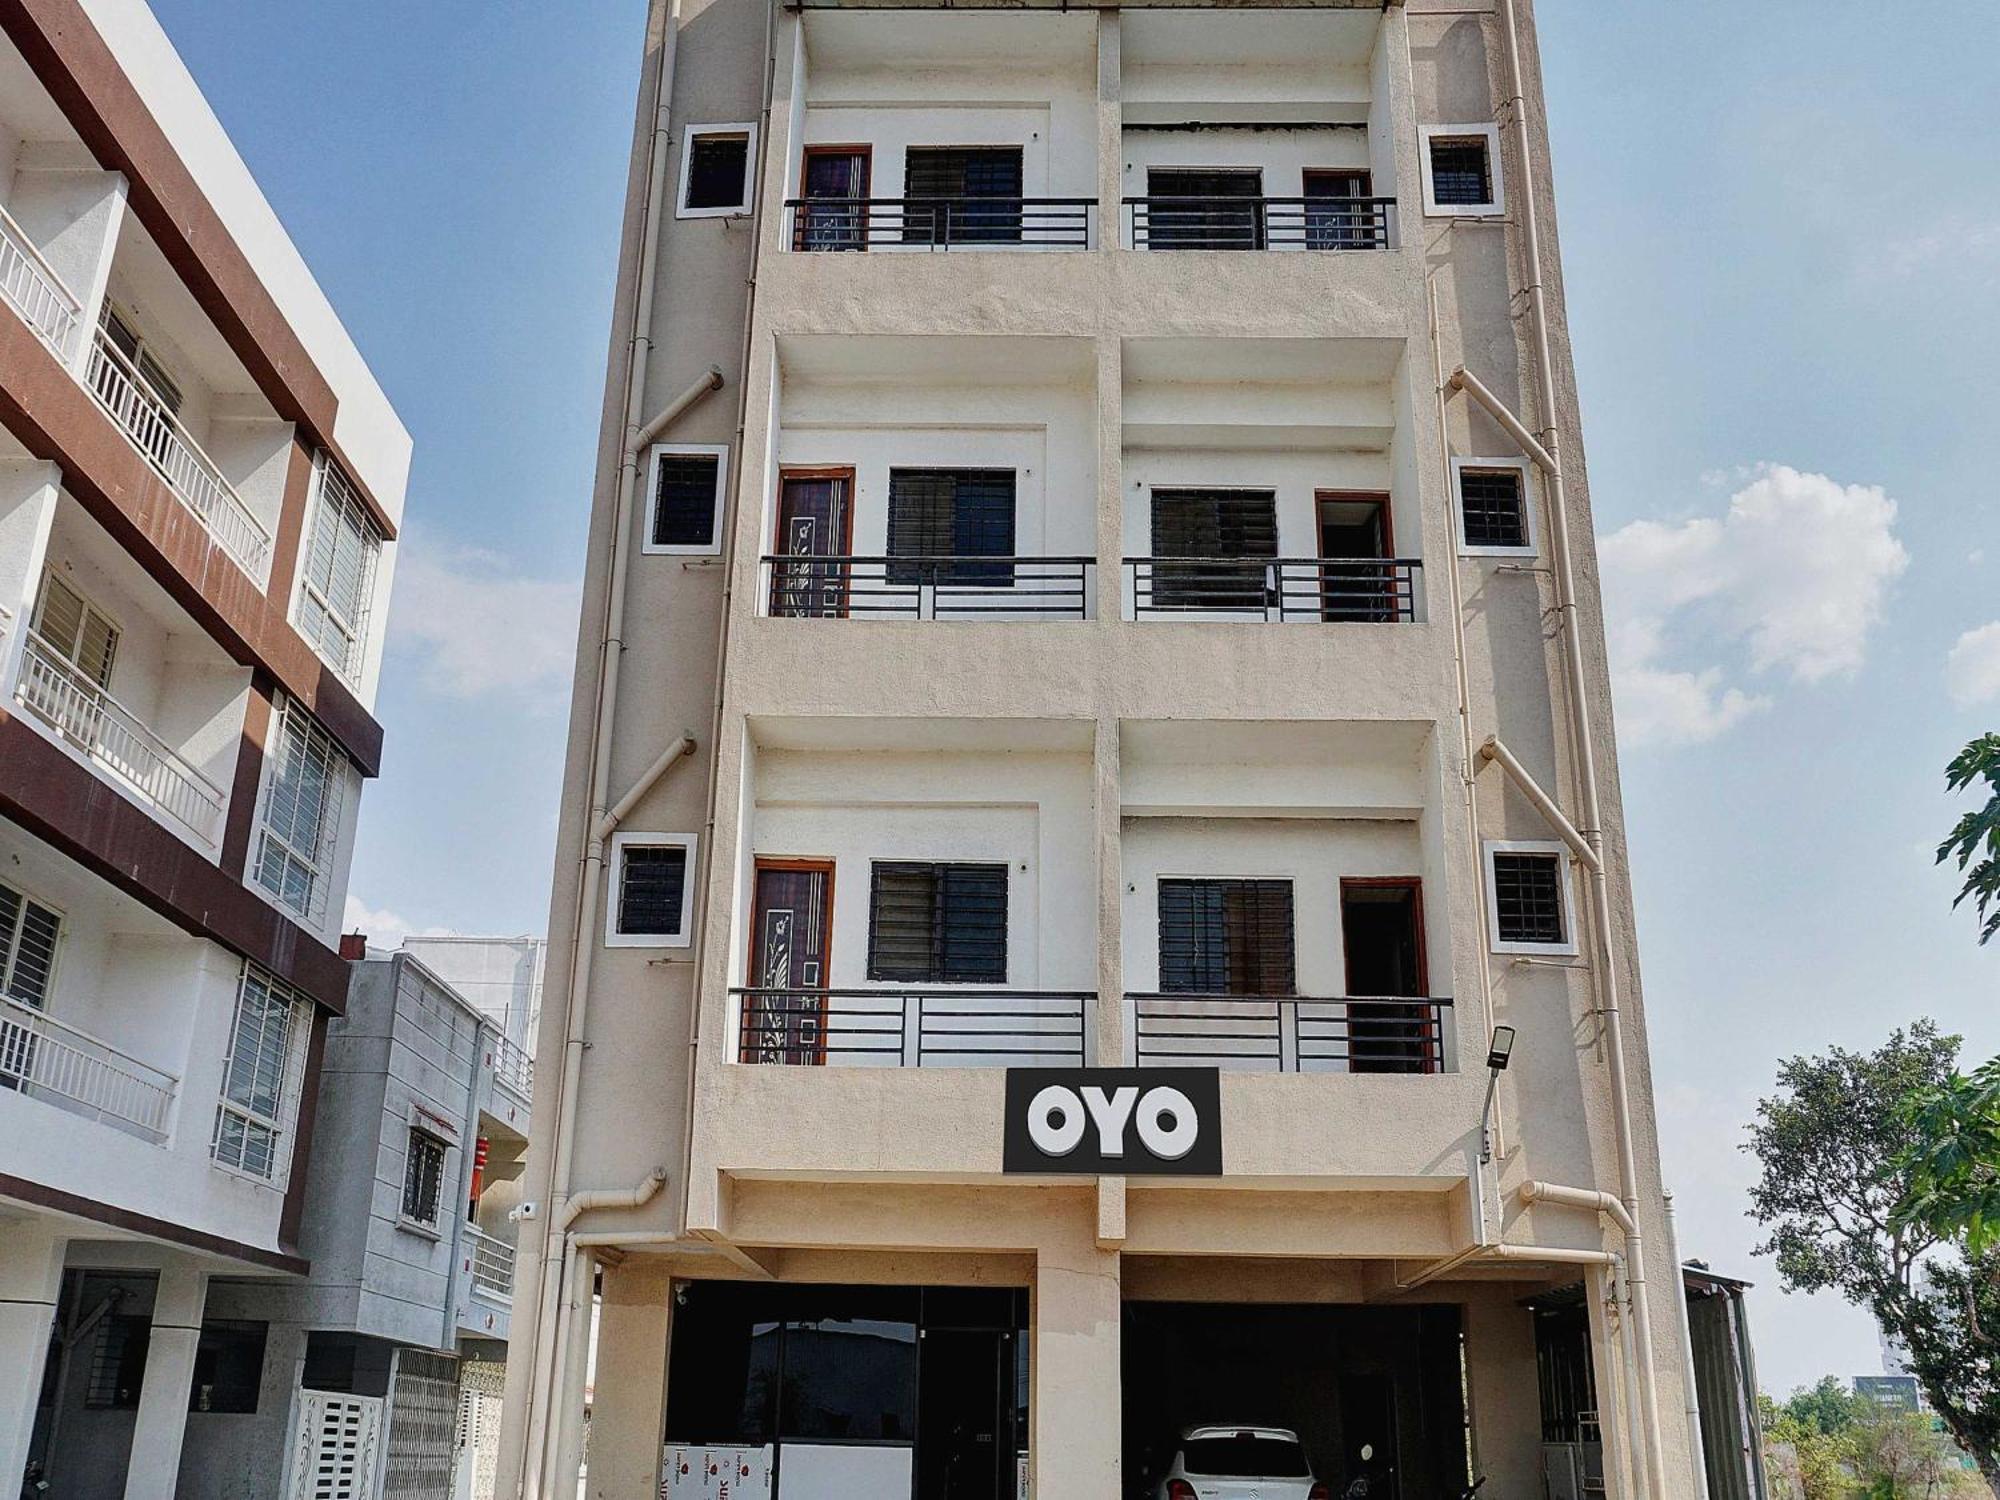 Oyo Flagship Dhuldev Executive Rooms Pune Bagian luar foto